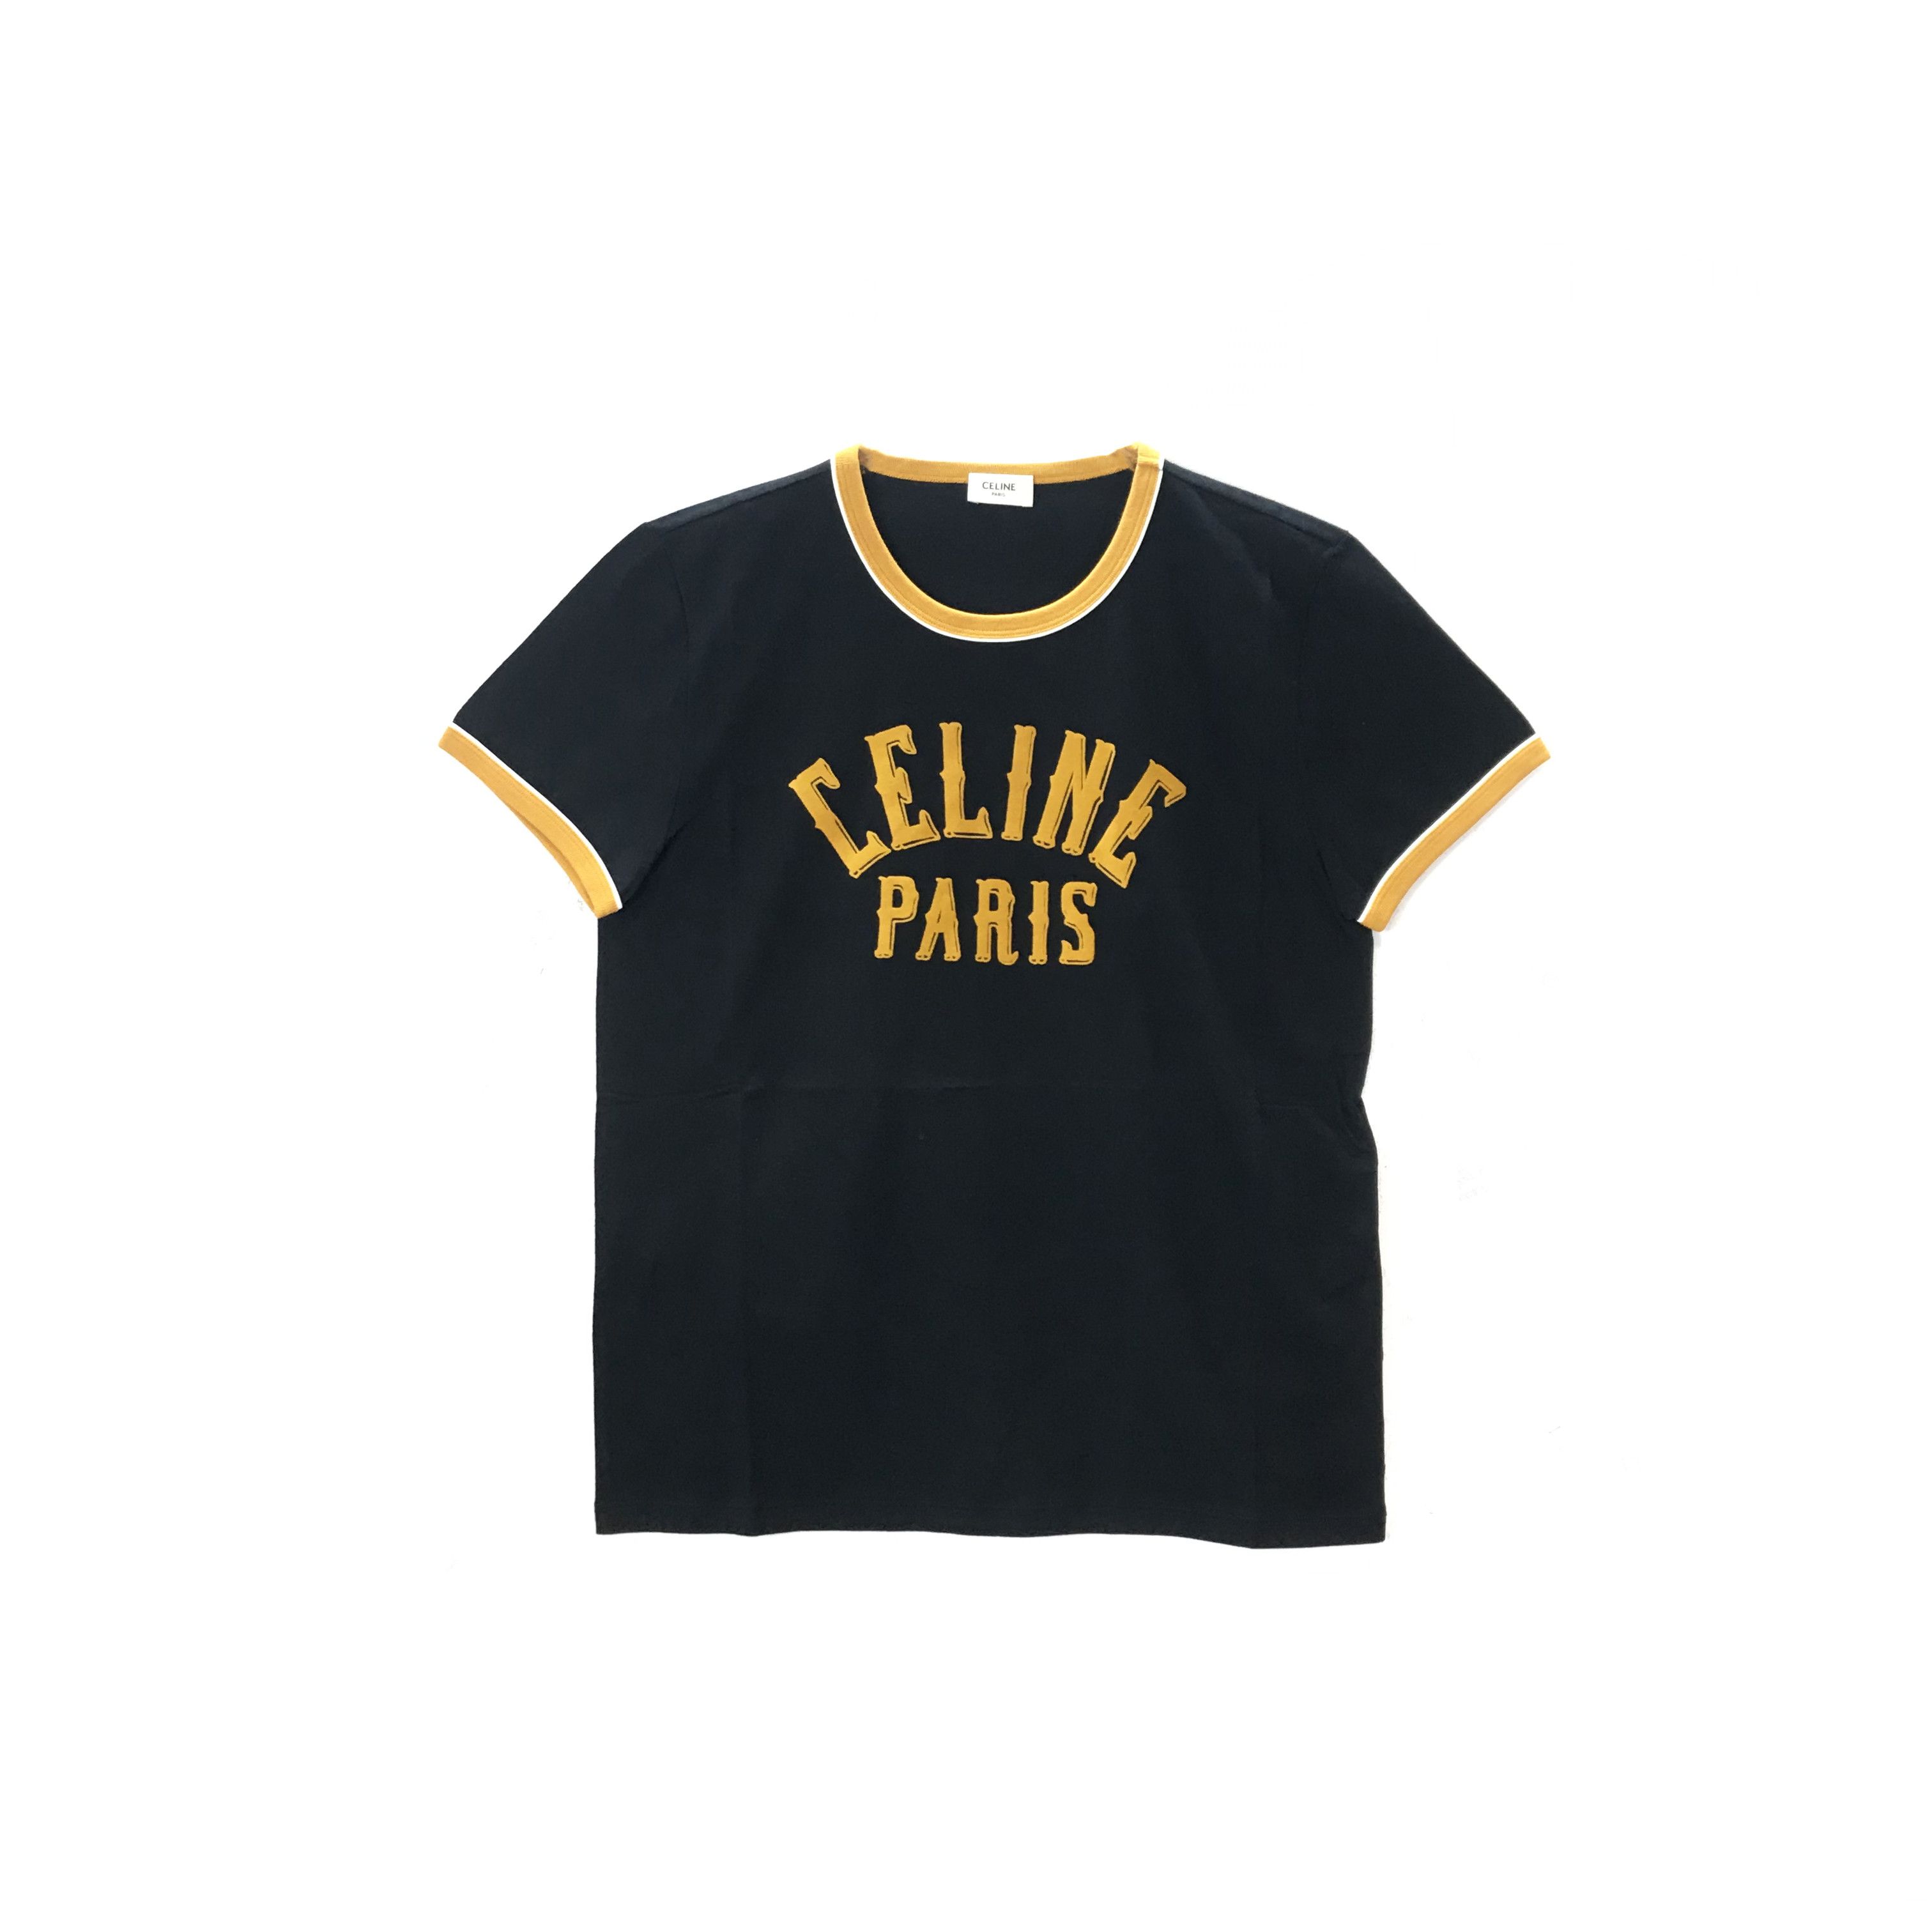 Celine Paris T Shirt KM  Paris shirt, Paris t shirt, T shirts for